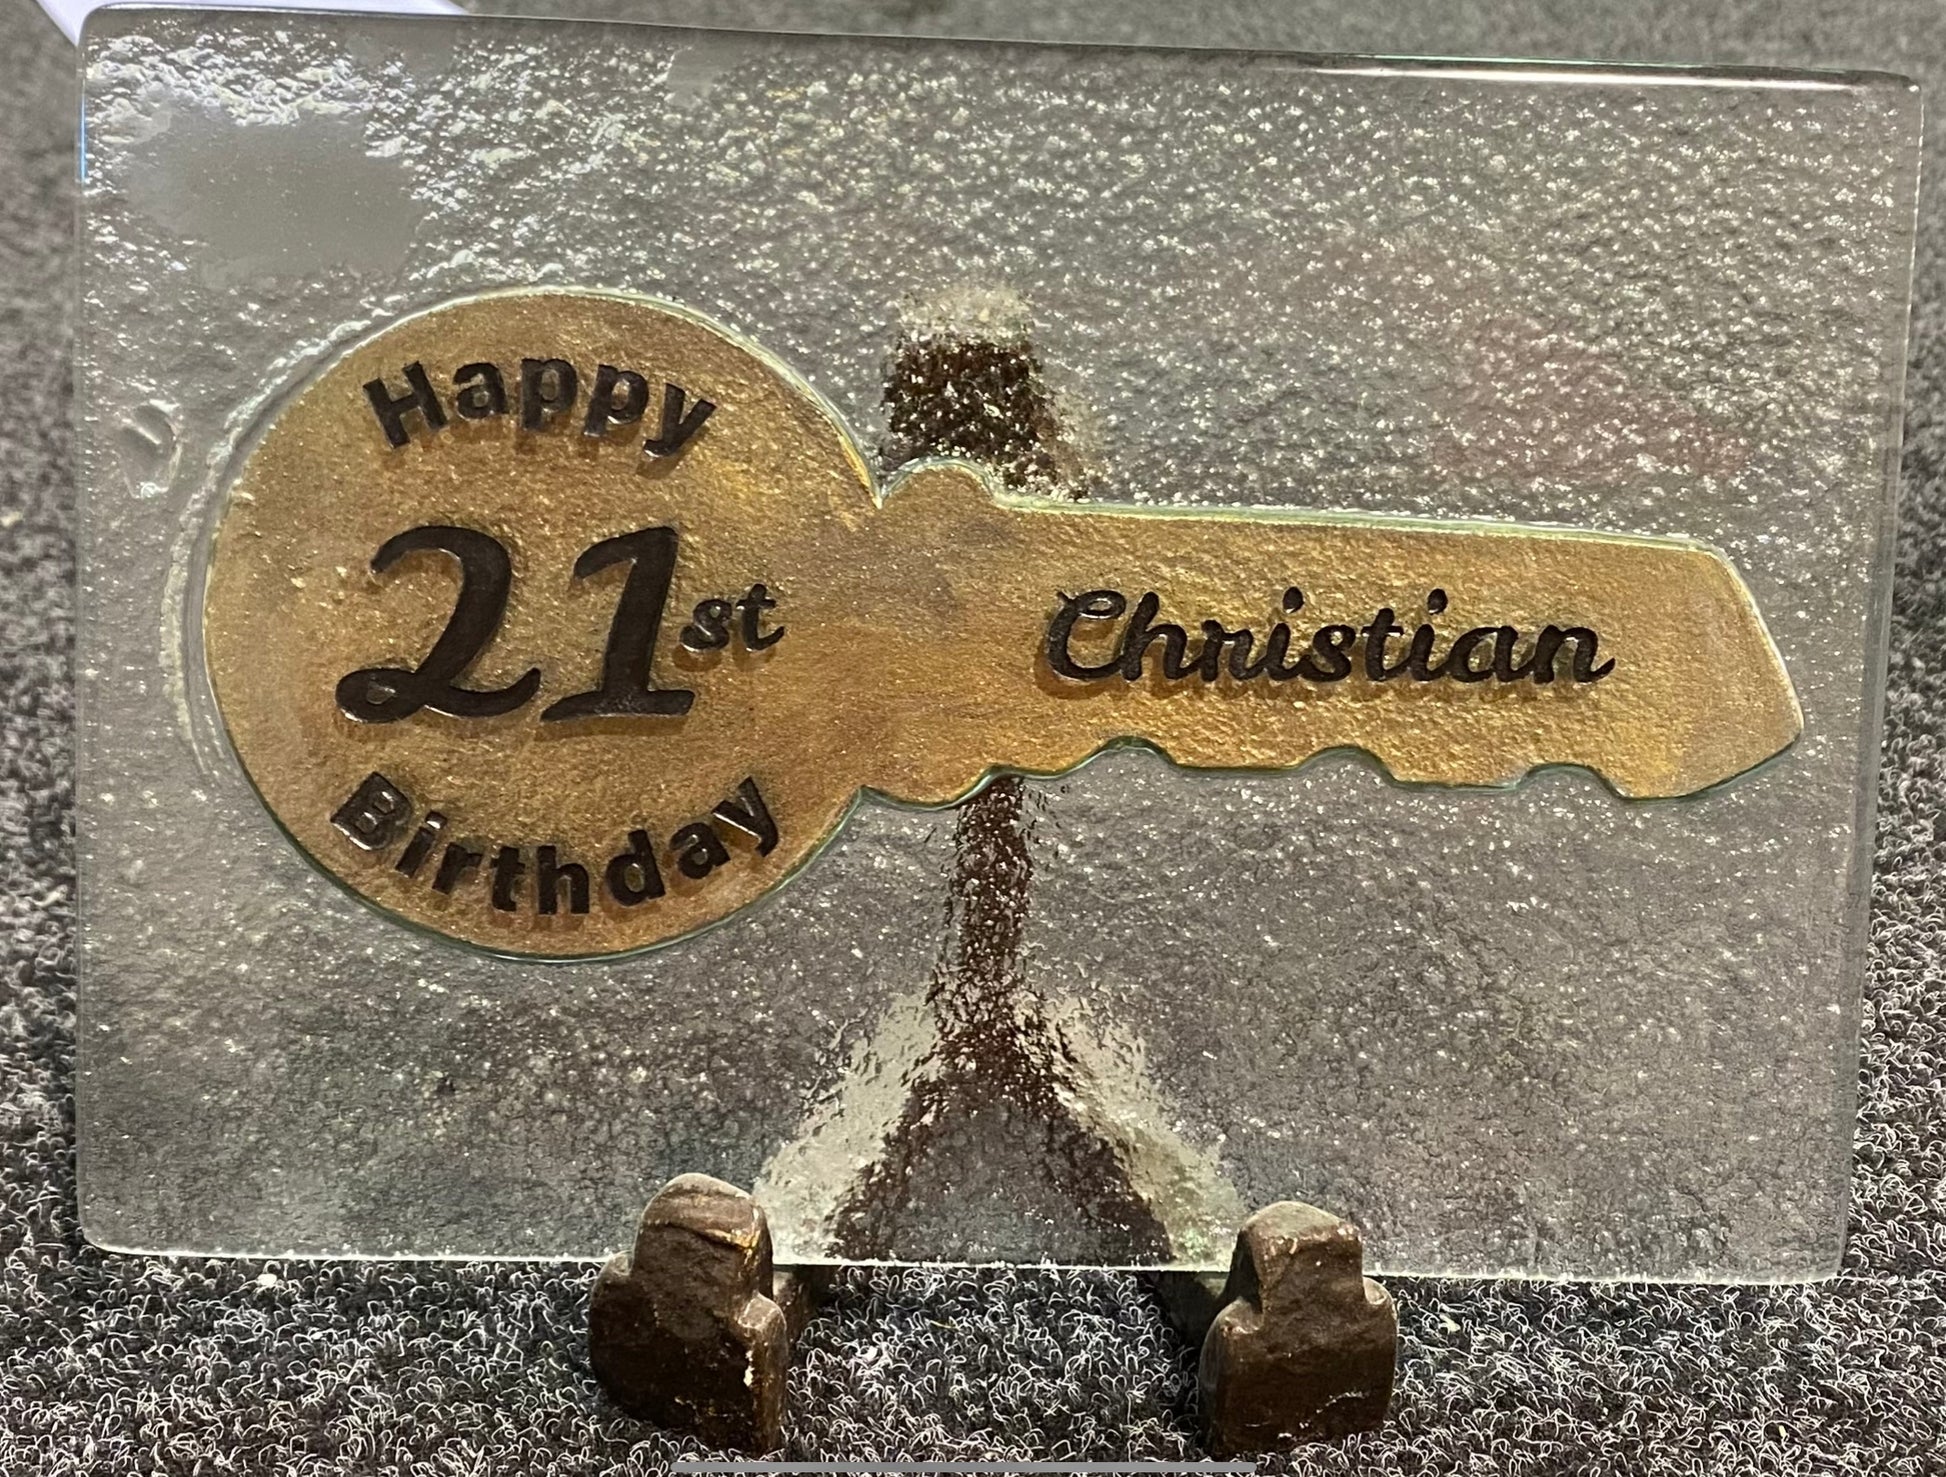 happy 21st birthday key